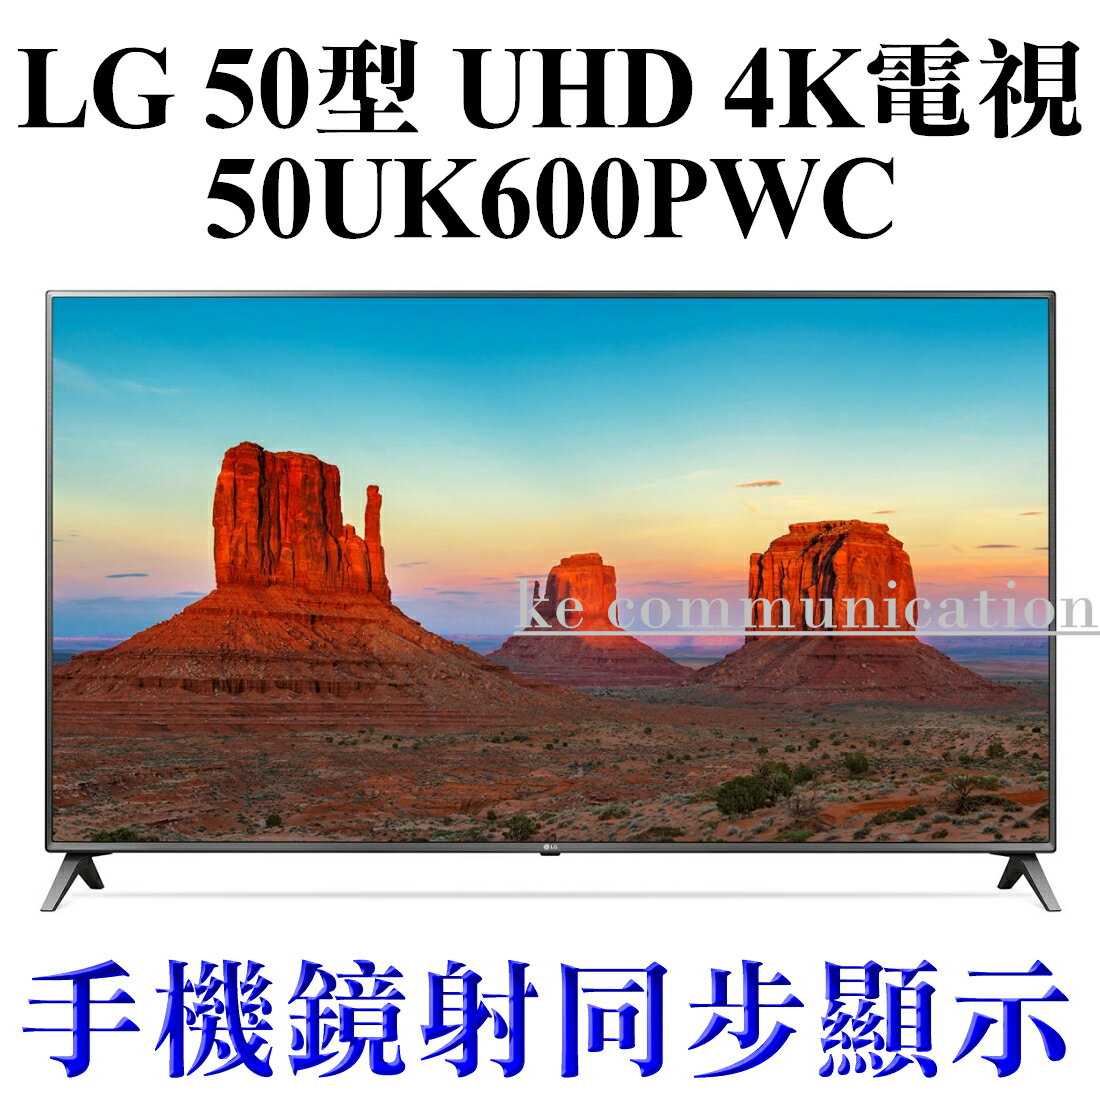 【免運費】LG 50型 UHD 4K 智慧連網液晶電視 50UK6500PWC 升級LG原廠智慧滑鼠搖控器